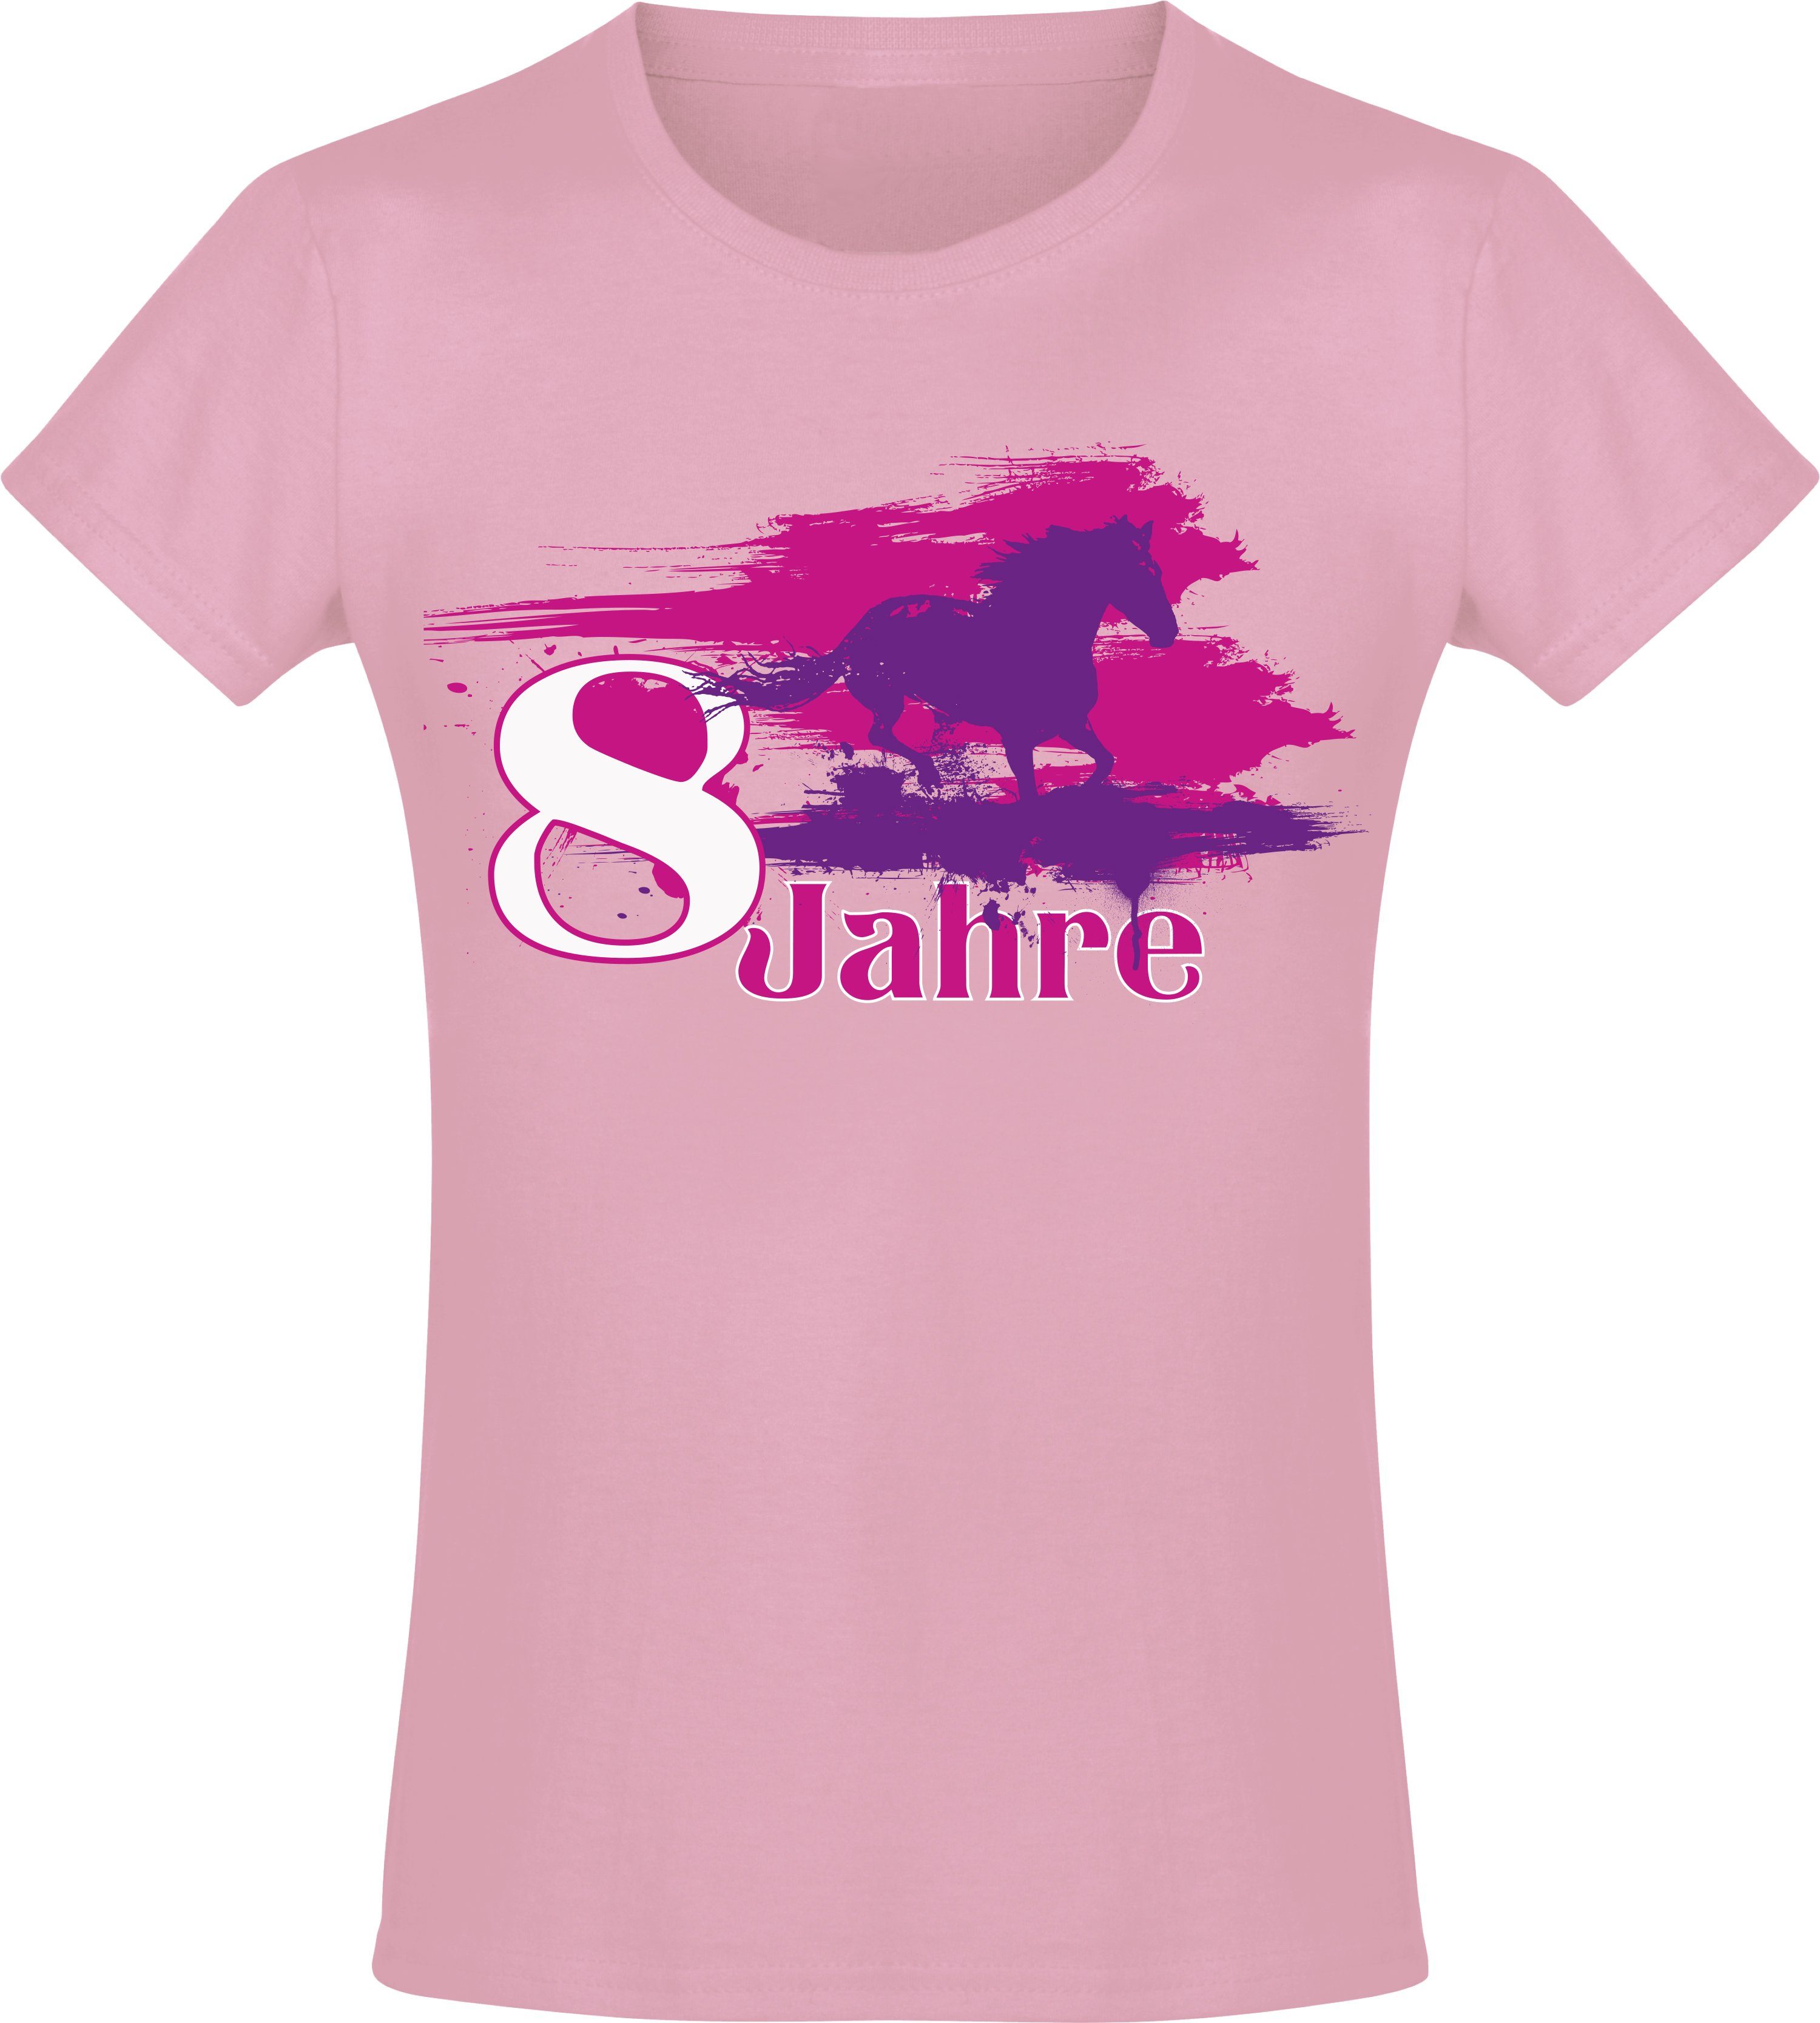 Baddery Print-Shirt Geburtstagsgeschenk für Mädchen : Geburtstagspferd 8 Jahre, hochwertiger Siebdruck, aus Baumwolle